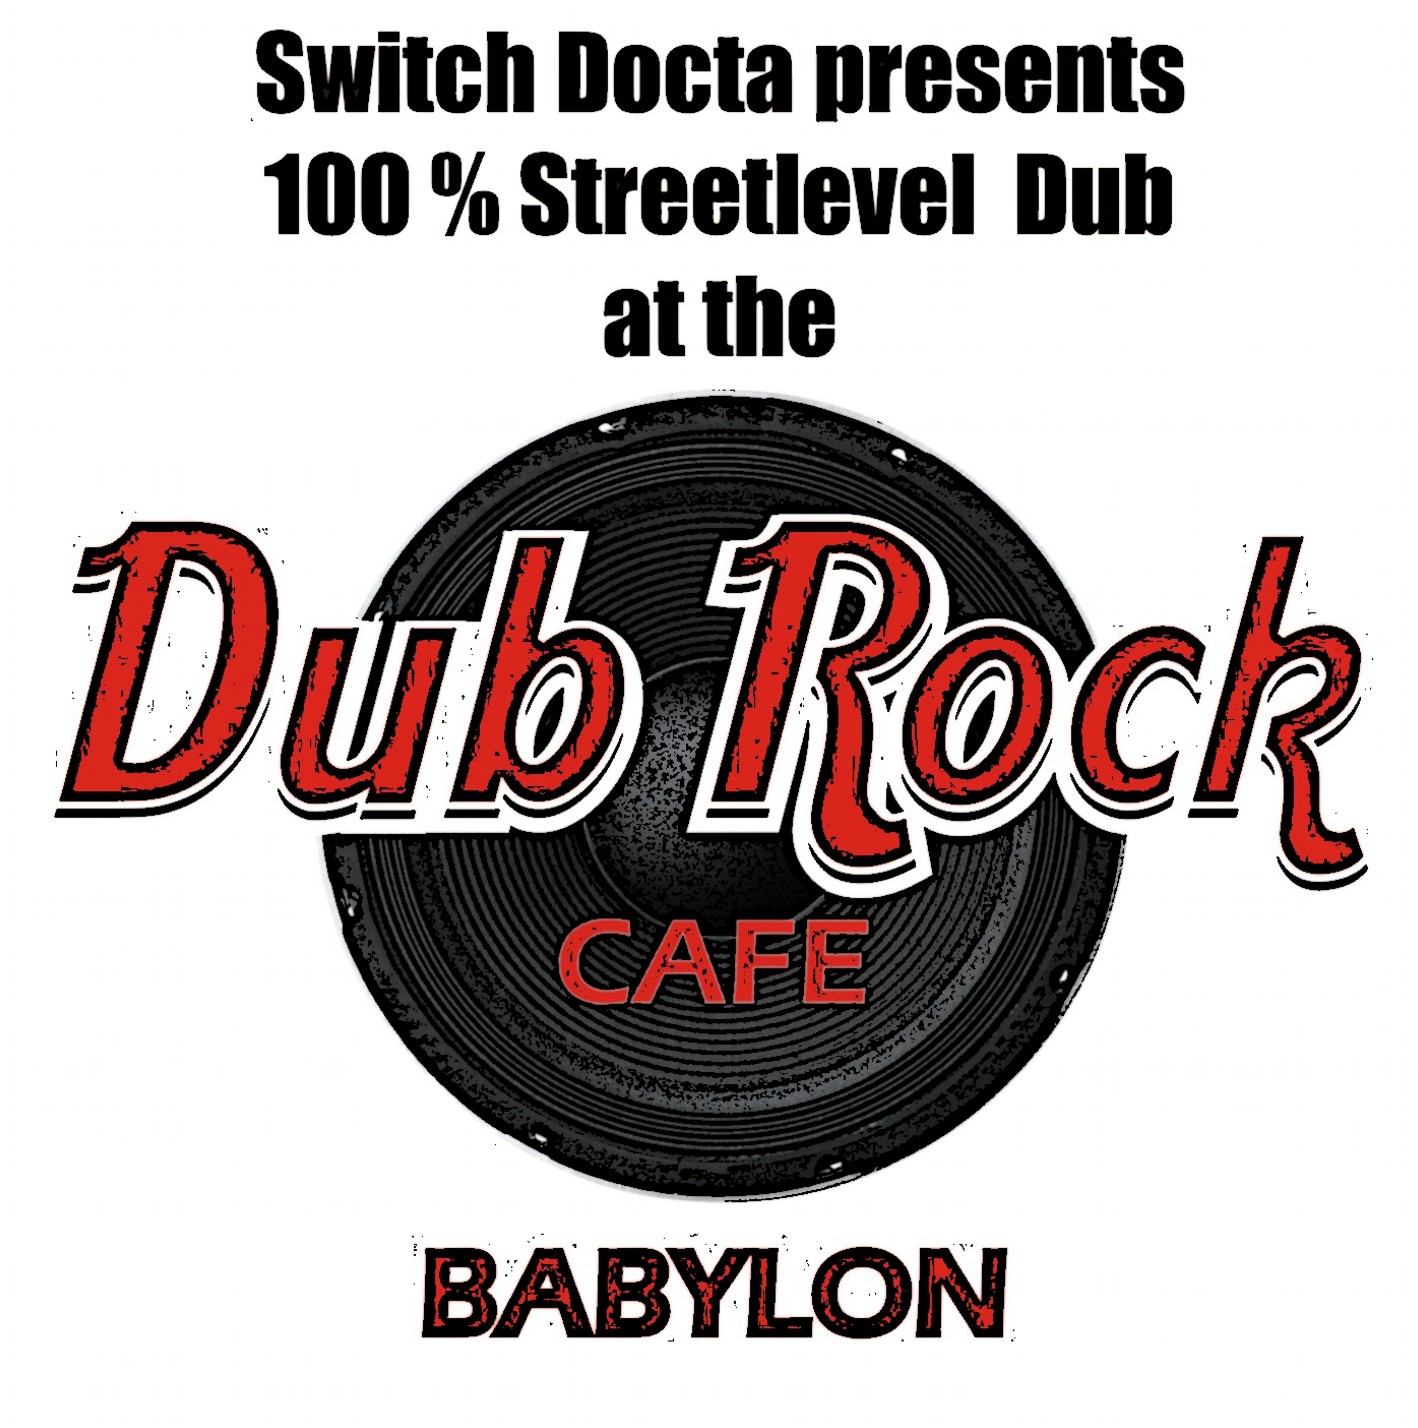 Dub Rock Cafe